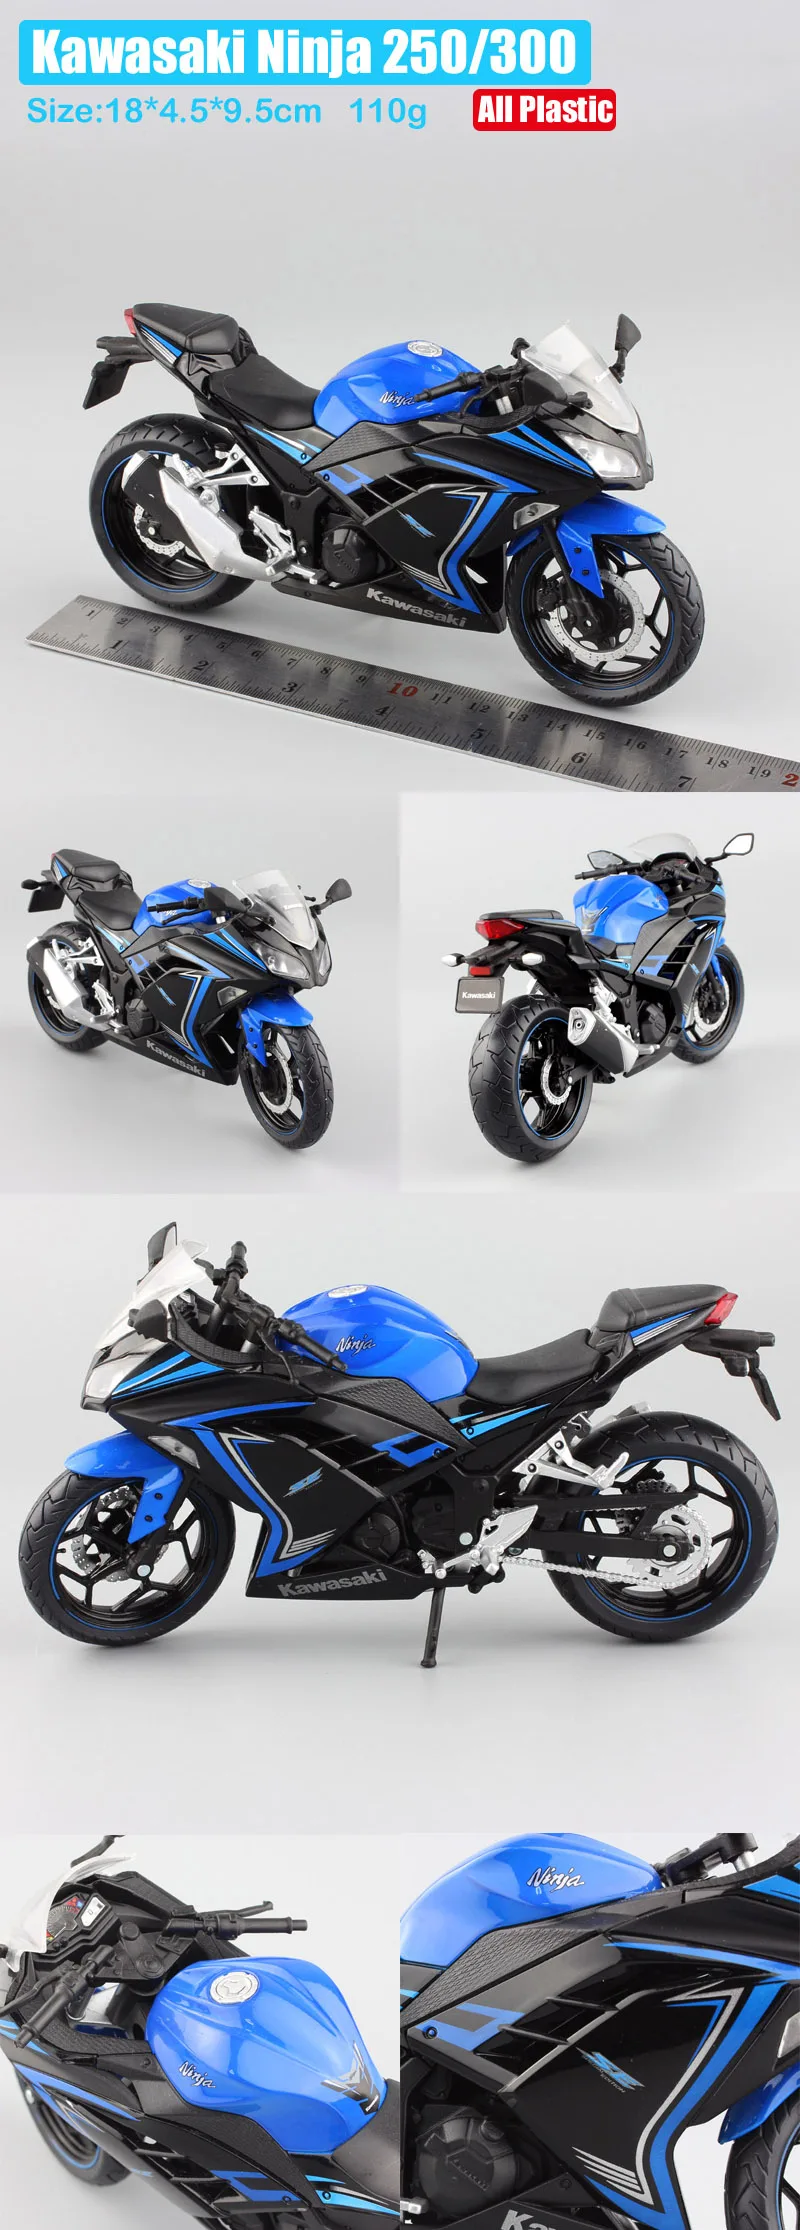 2013 Kawasaki Ninja 250R 1:12 Scale Motorcycle Diecast Metal Model Bike Red Toy 